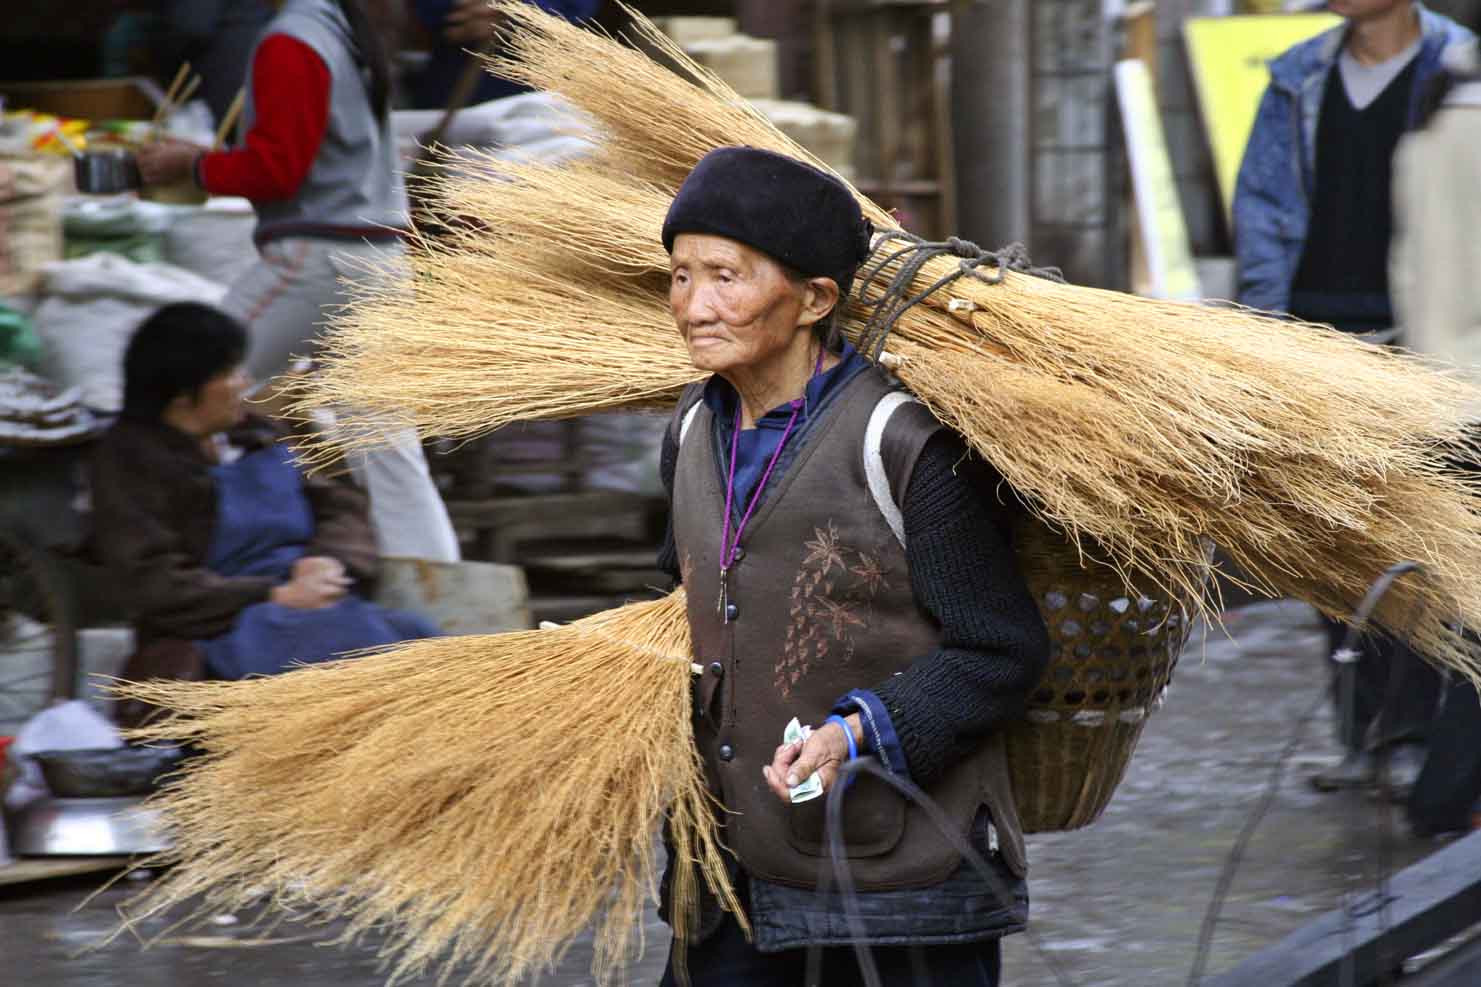 Elderly woman taking brooms to market. Jishou City, China.